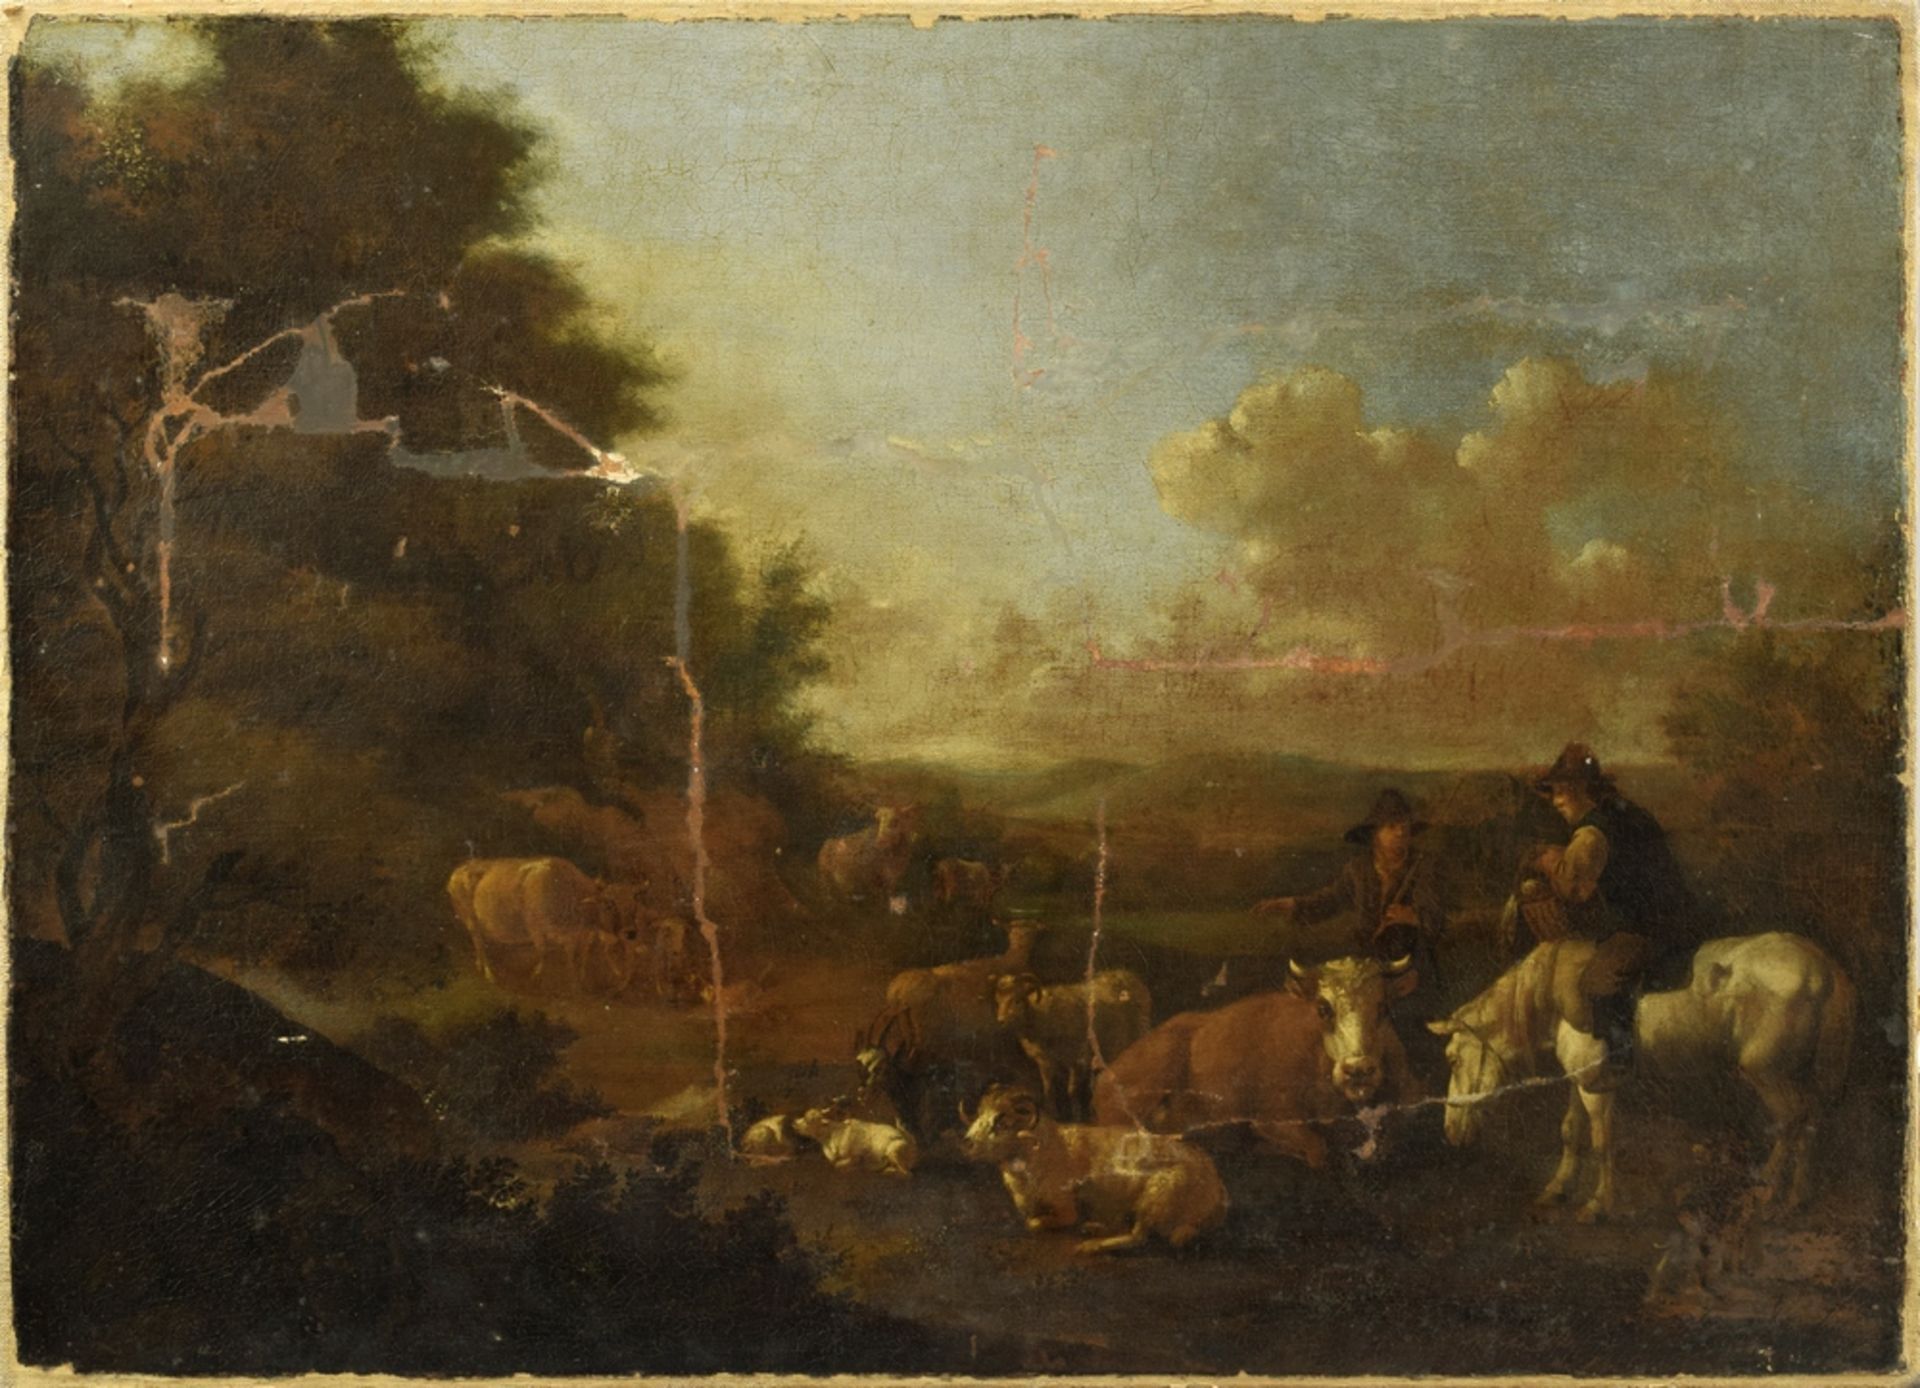 Unbekannter Künstler des 18.Jh. "Pastorale Szene mit Viehherde und Personenstaffage" in Art